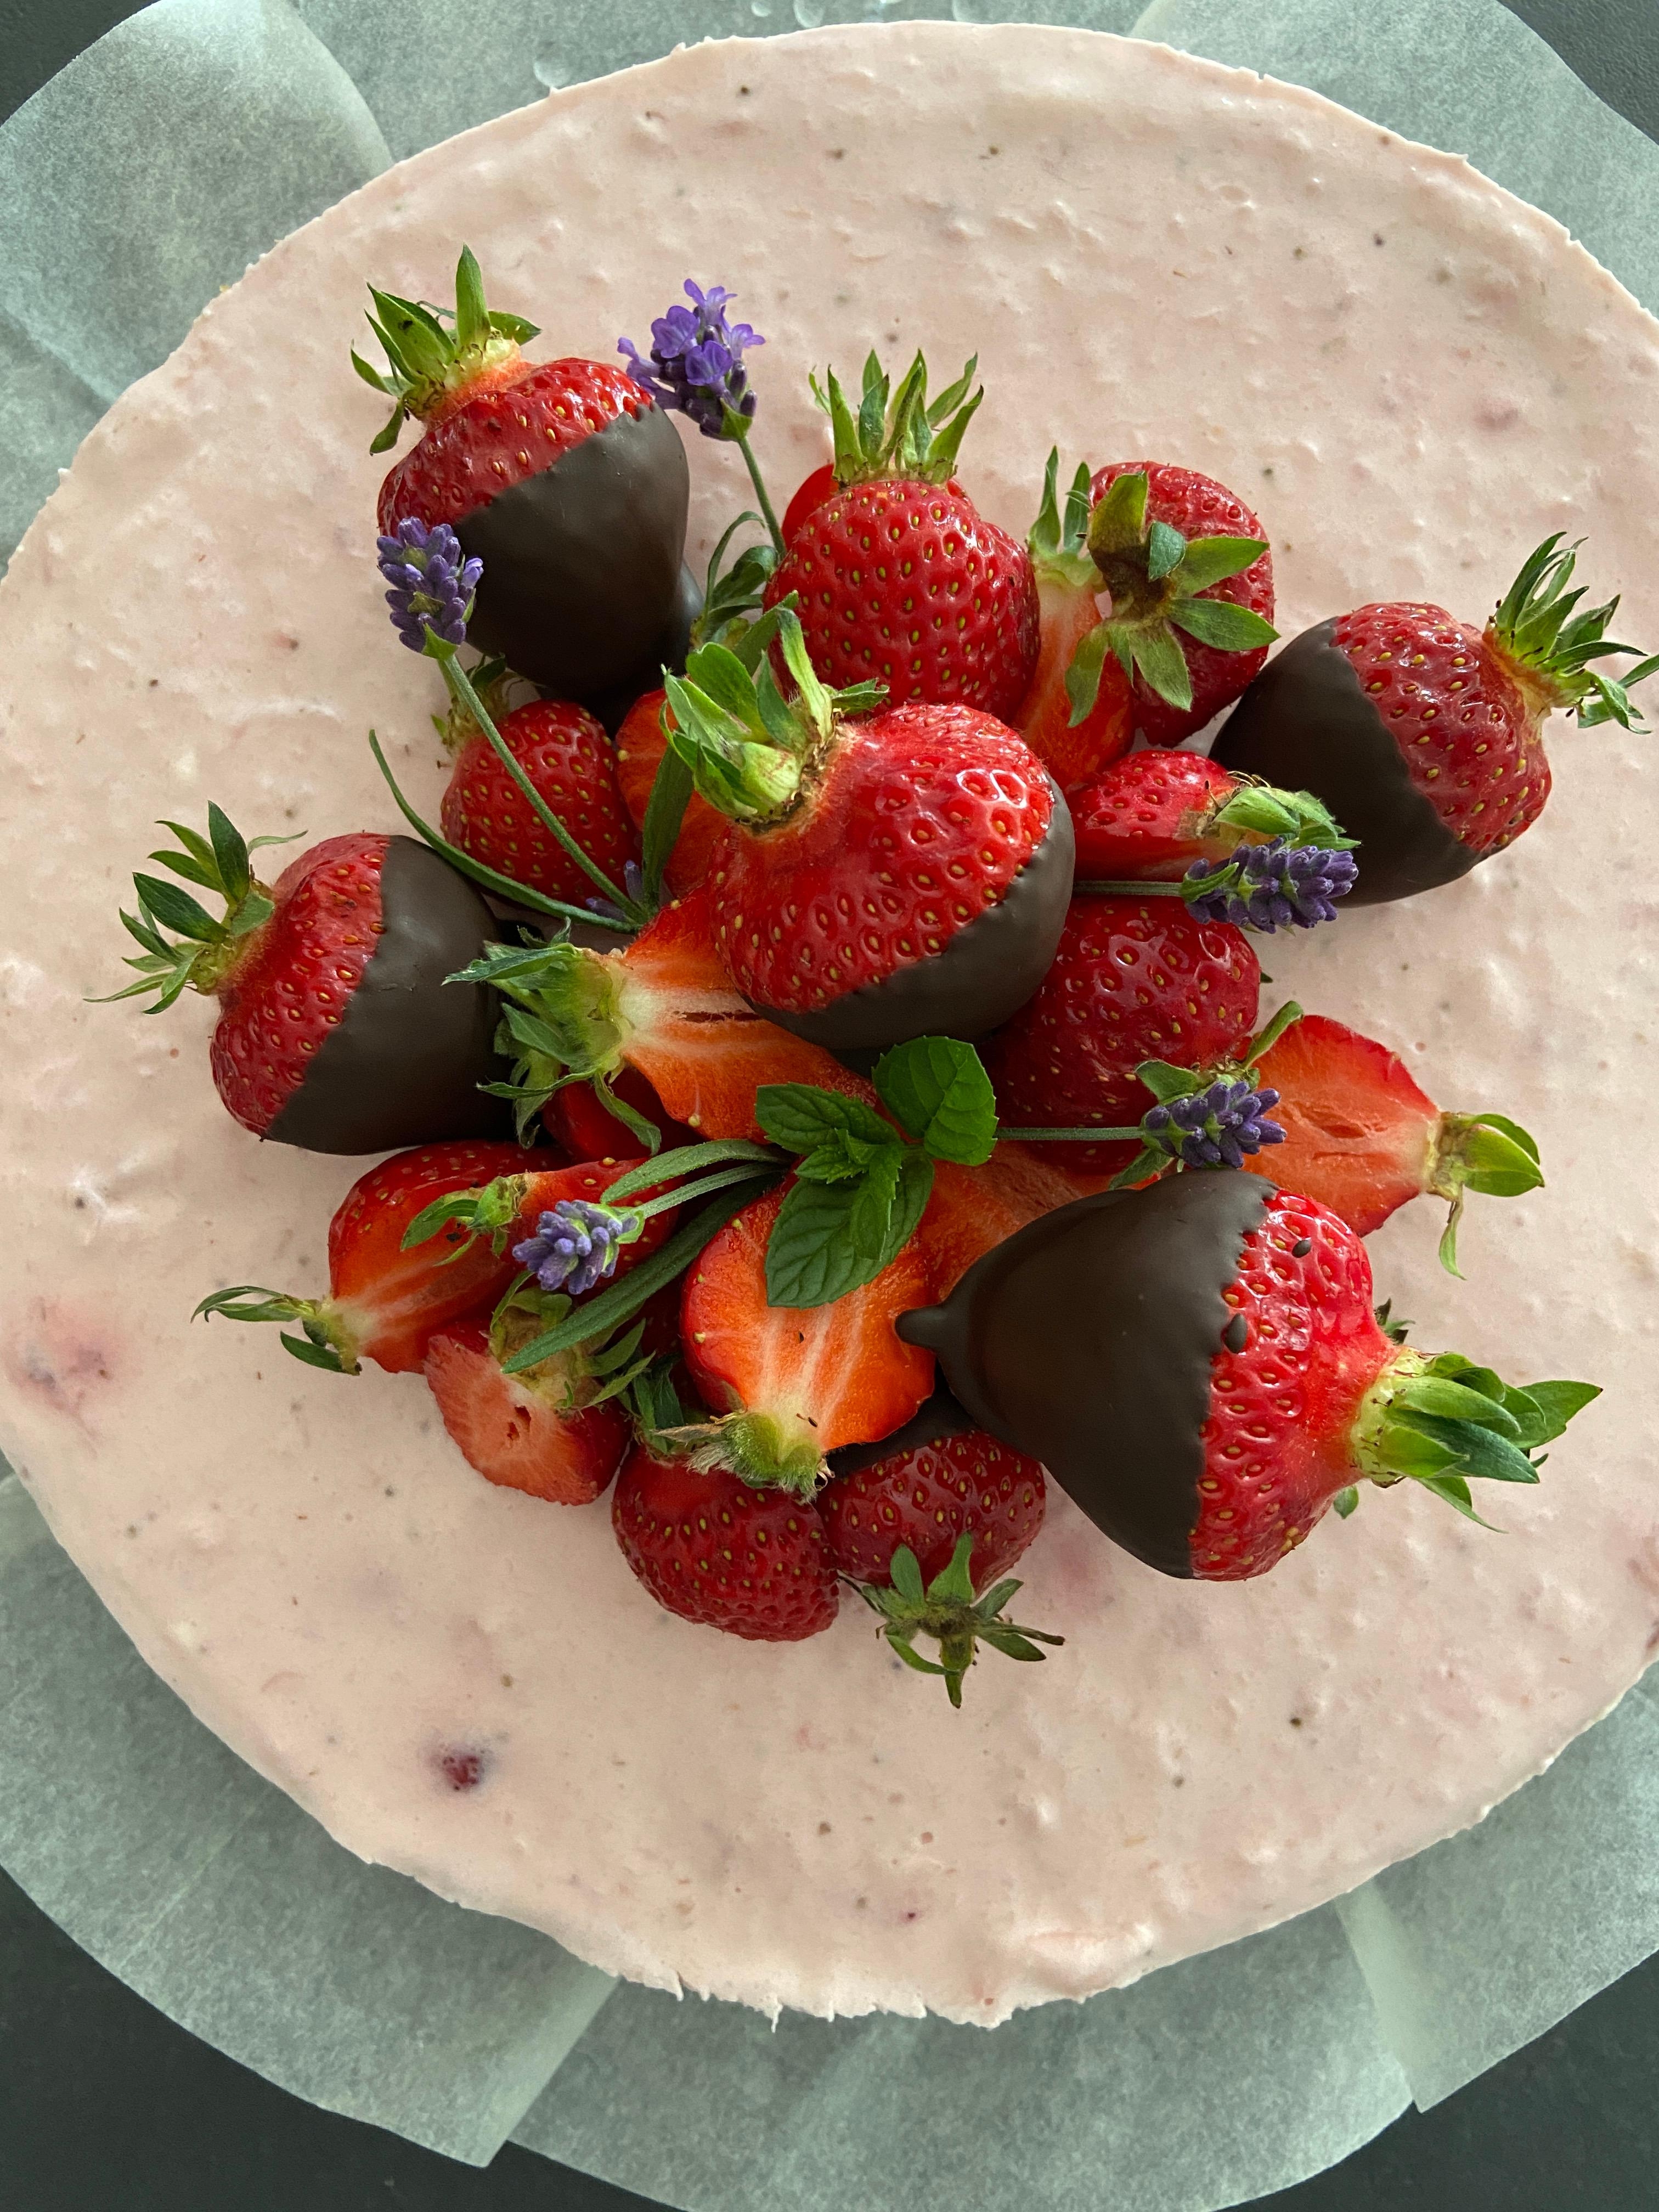 Erdbeer-Buttermilchmousse-Torte 🍓
#erdbeerzeit#geburtstagskuchen#lavendel#schokofrüchte#backliebe#baking#erdbeeren